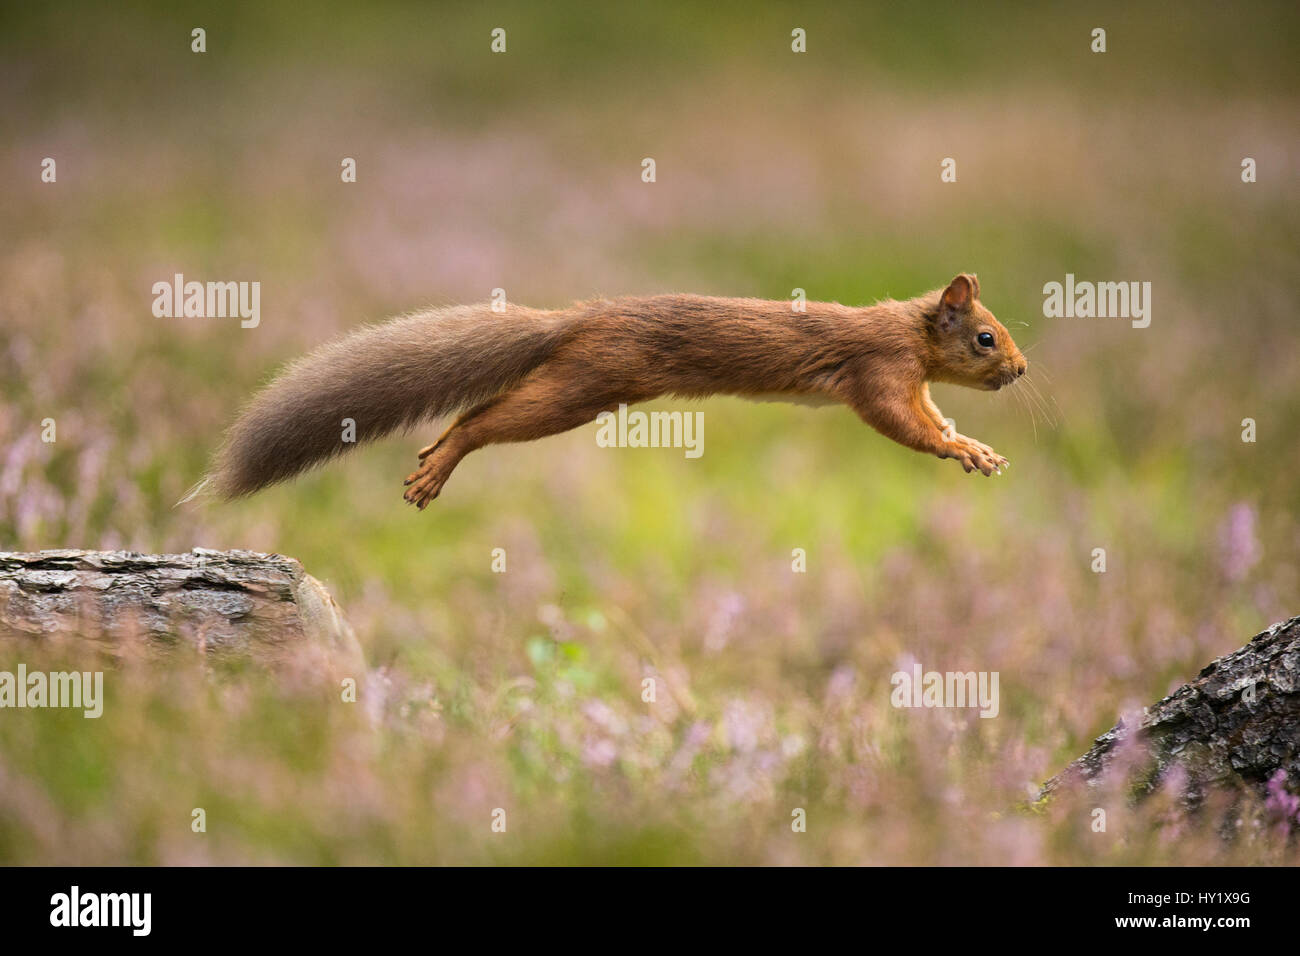 Eichhörnchen (Sciurus Vulgaris) im Sommer Mantel springen zwischen umgestürzte Baumstämme. Schottland, Großbritannien. September. Stockfoto